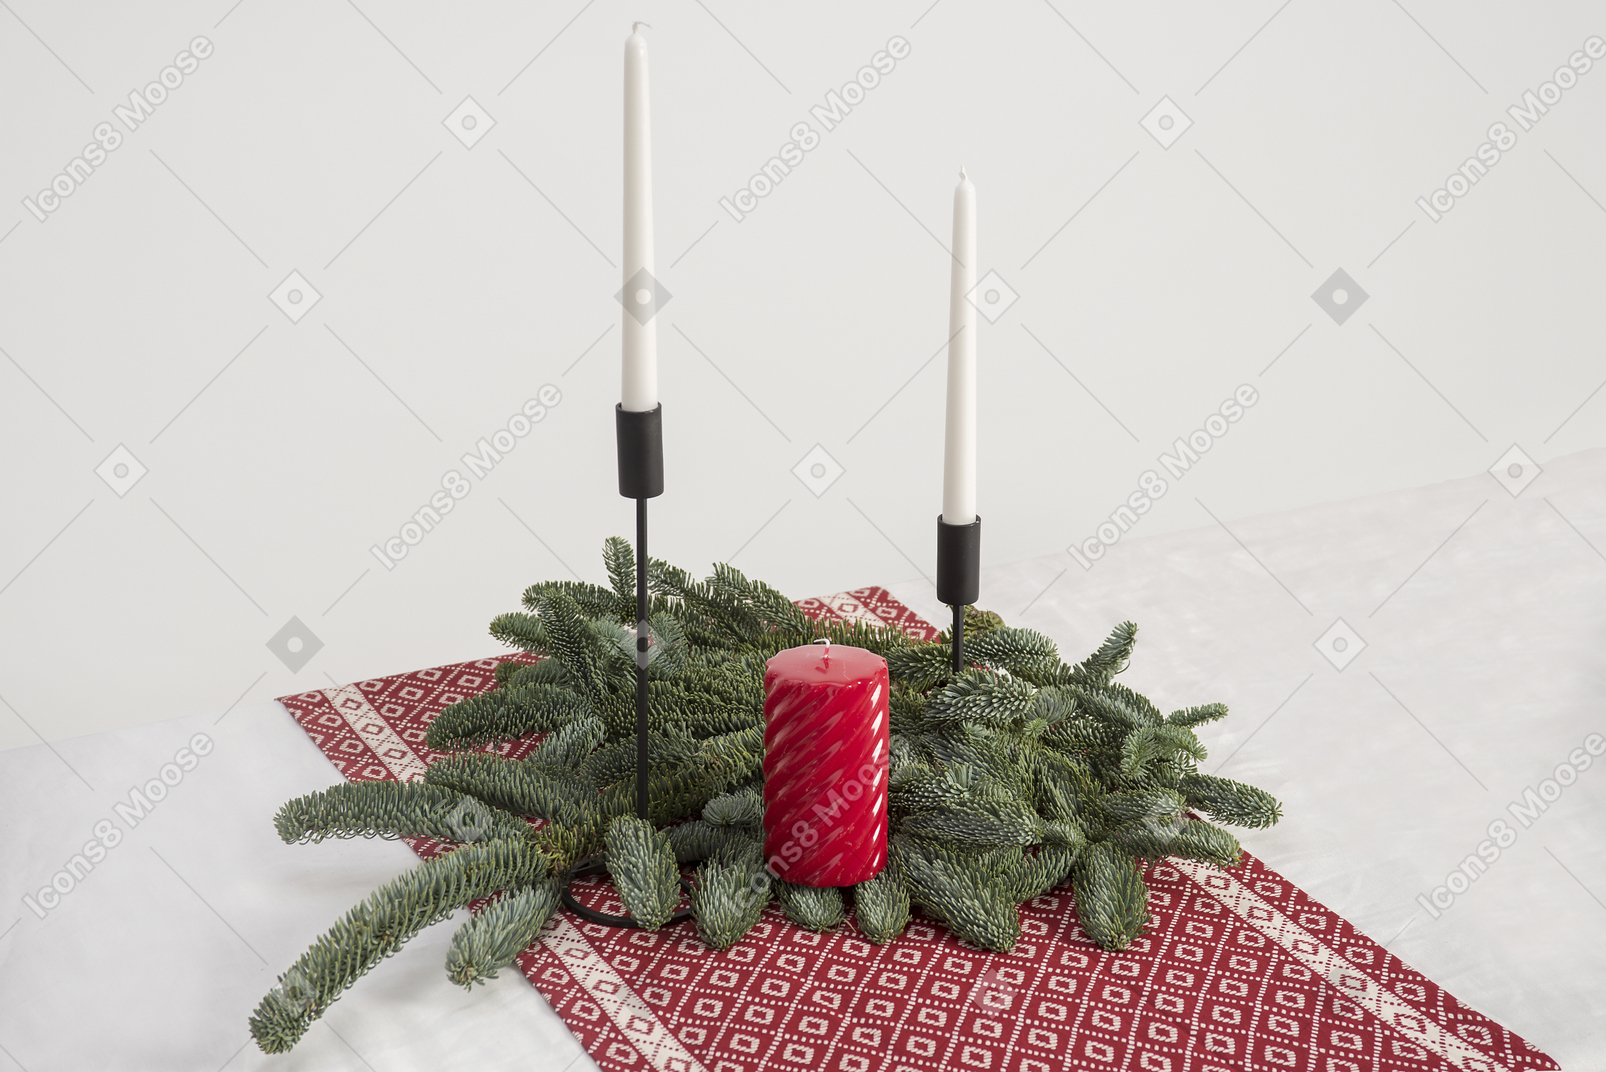 큰 촛불과 촛대와 크리스마스 트리의 분기에 두 개의 촛불